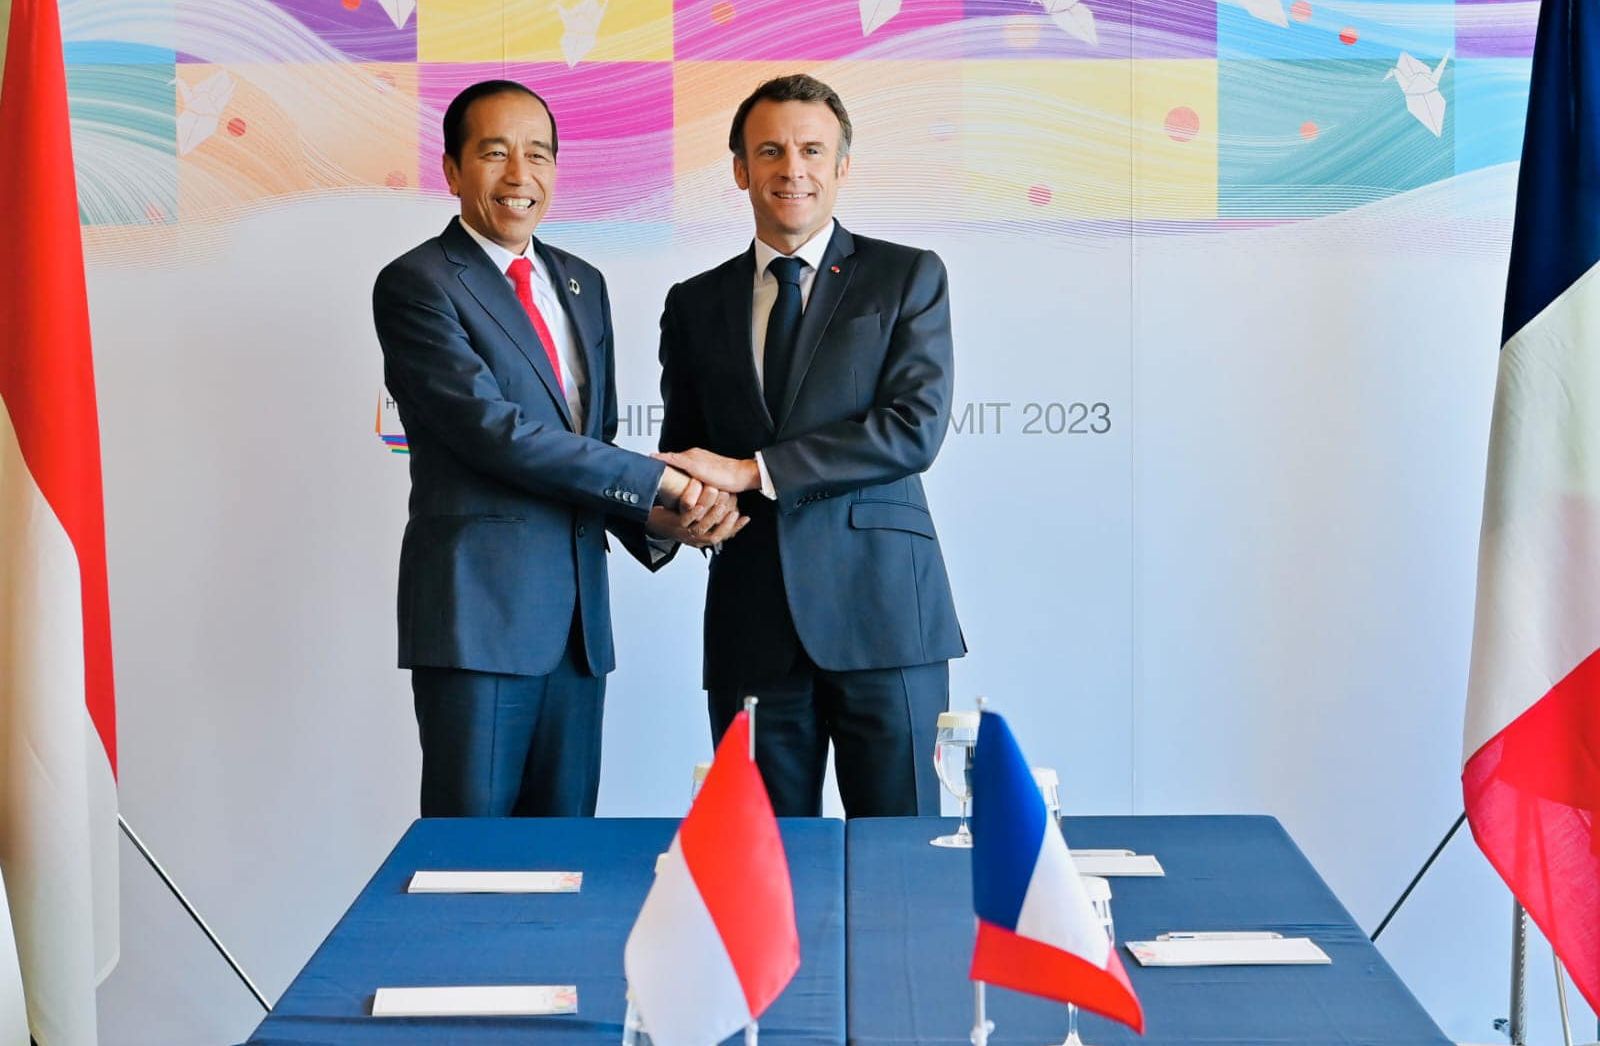 Presiden Joko Widodo dan Presiden Prancis, Emmanuel Macron, melakukan pertemuan bilateral di sela-sela KTT G7 ke-49 di Hiroshima, Jepang